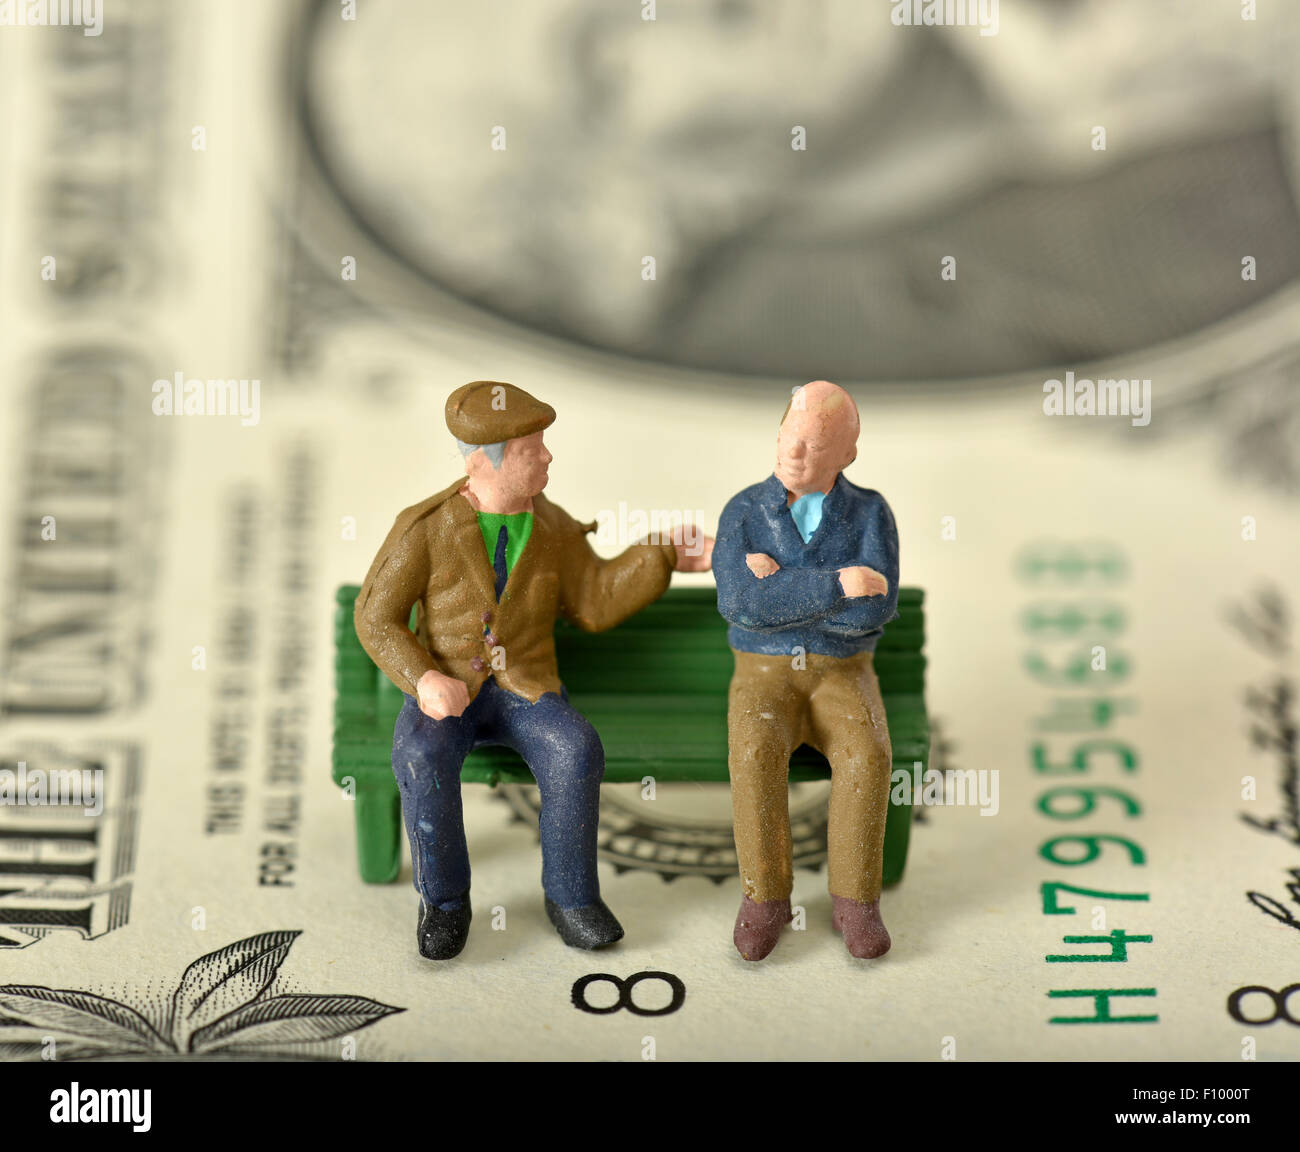 Rentner auf einer Bank, Dollarnote hinter symbolisches Bild für Rente, private und staatliche Rente Stockfoto